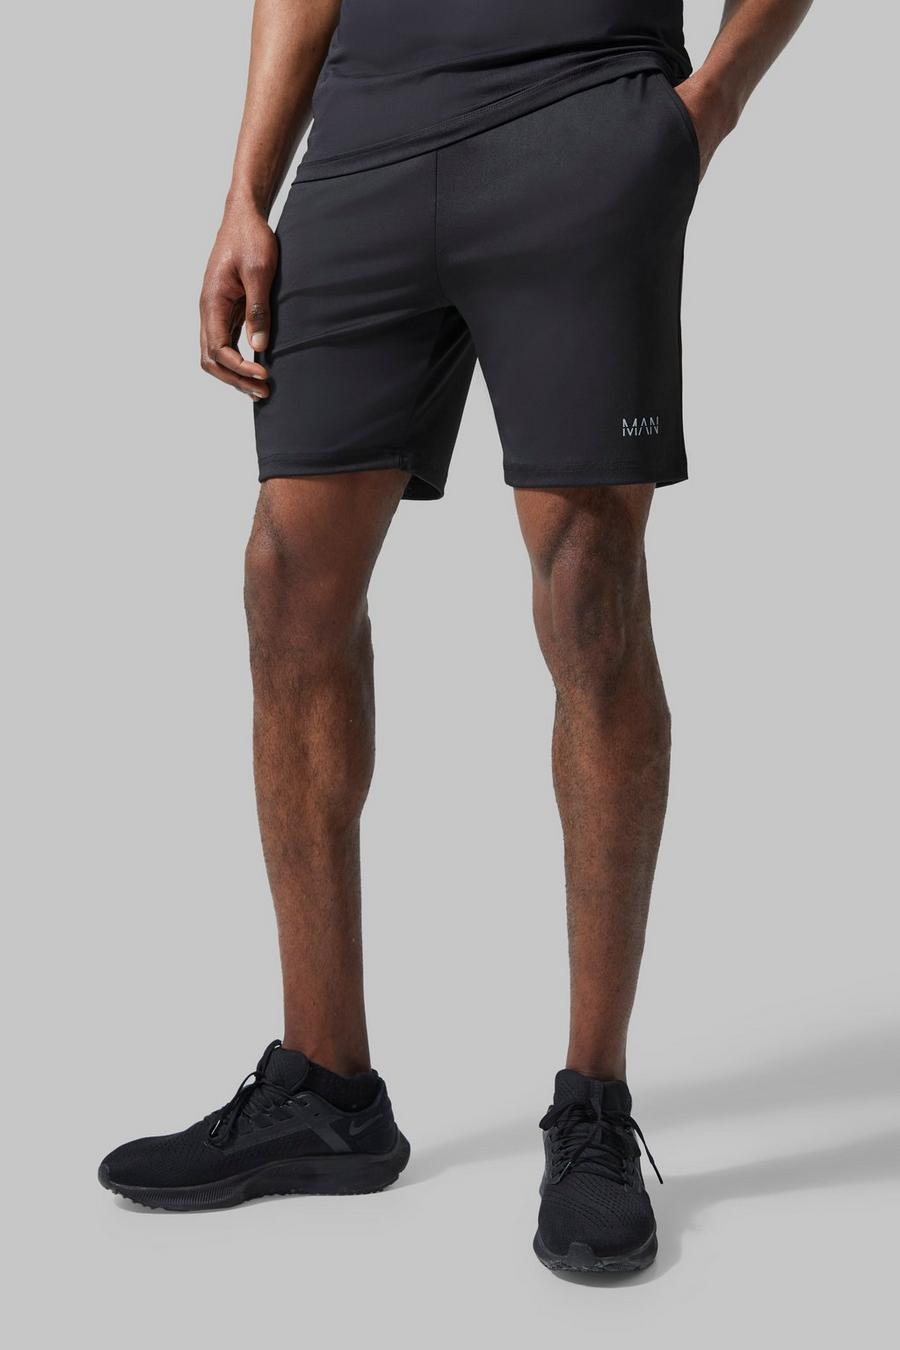 Pantalón corto MAN Active deportivo resistente, Black